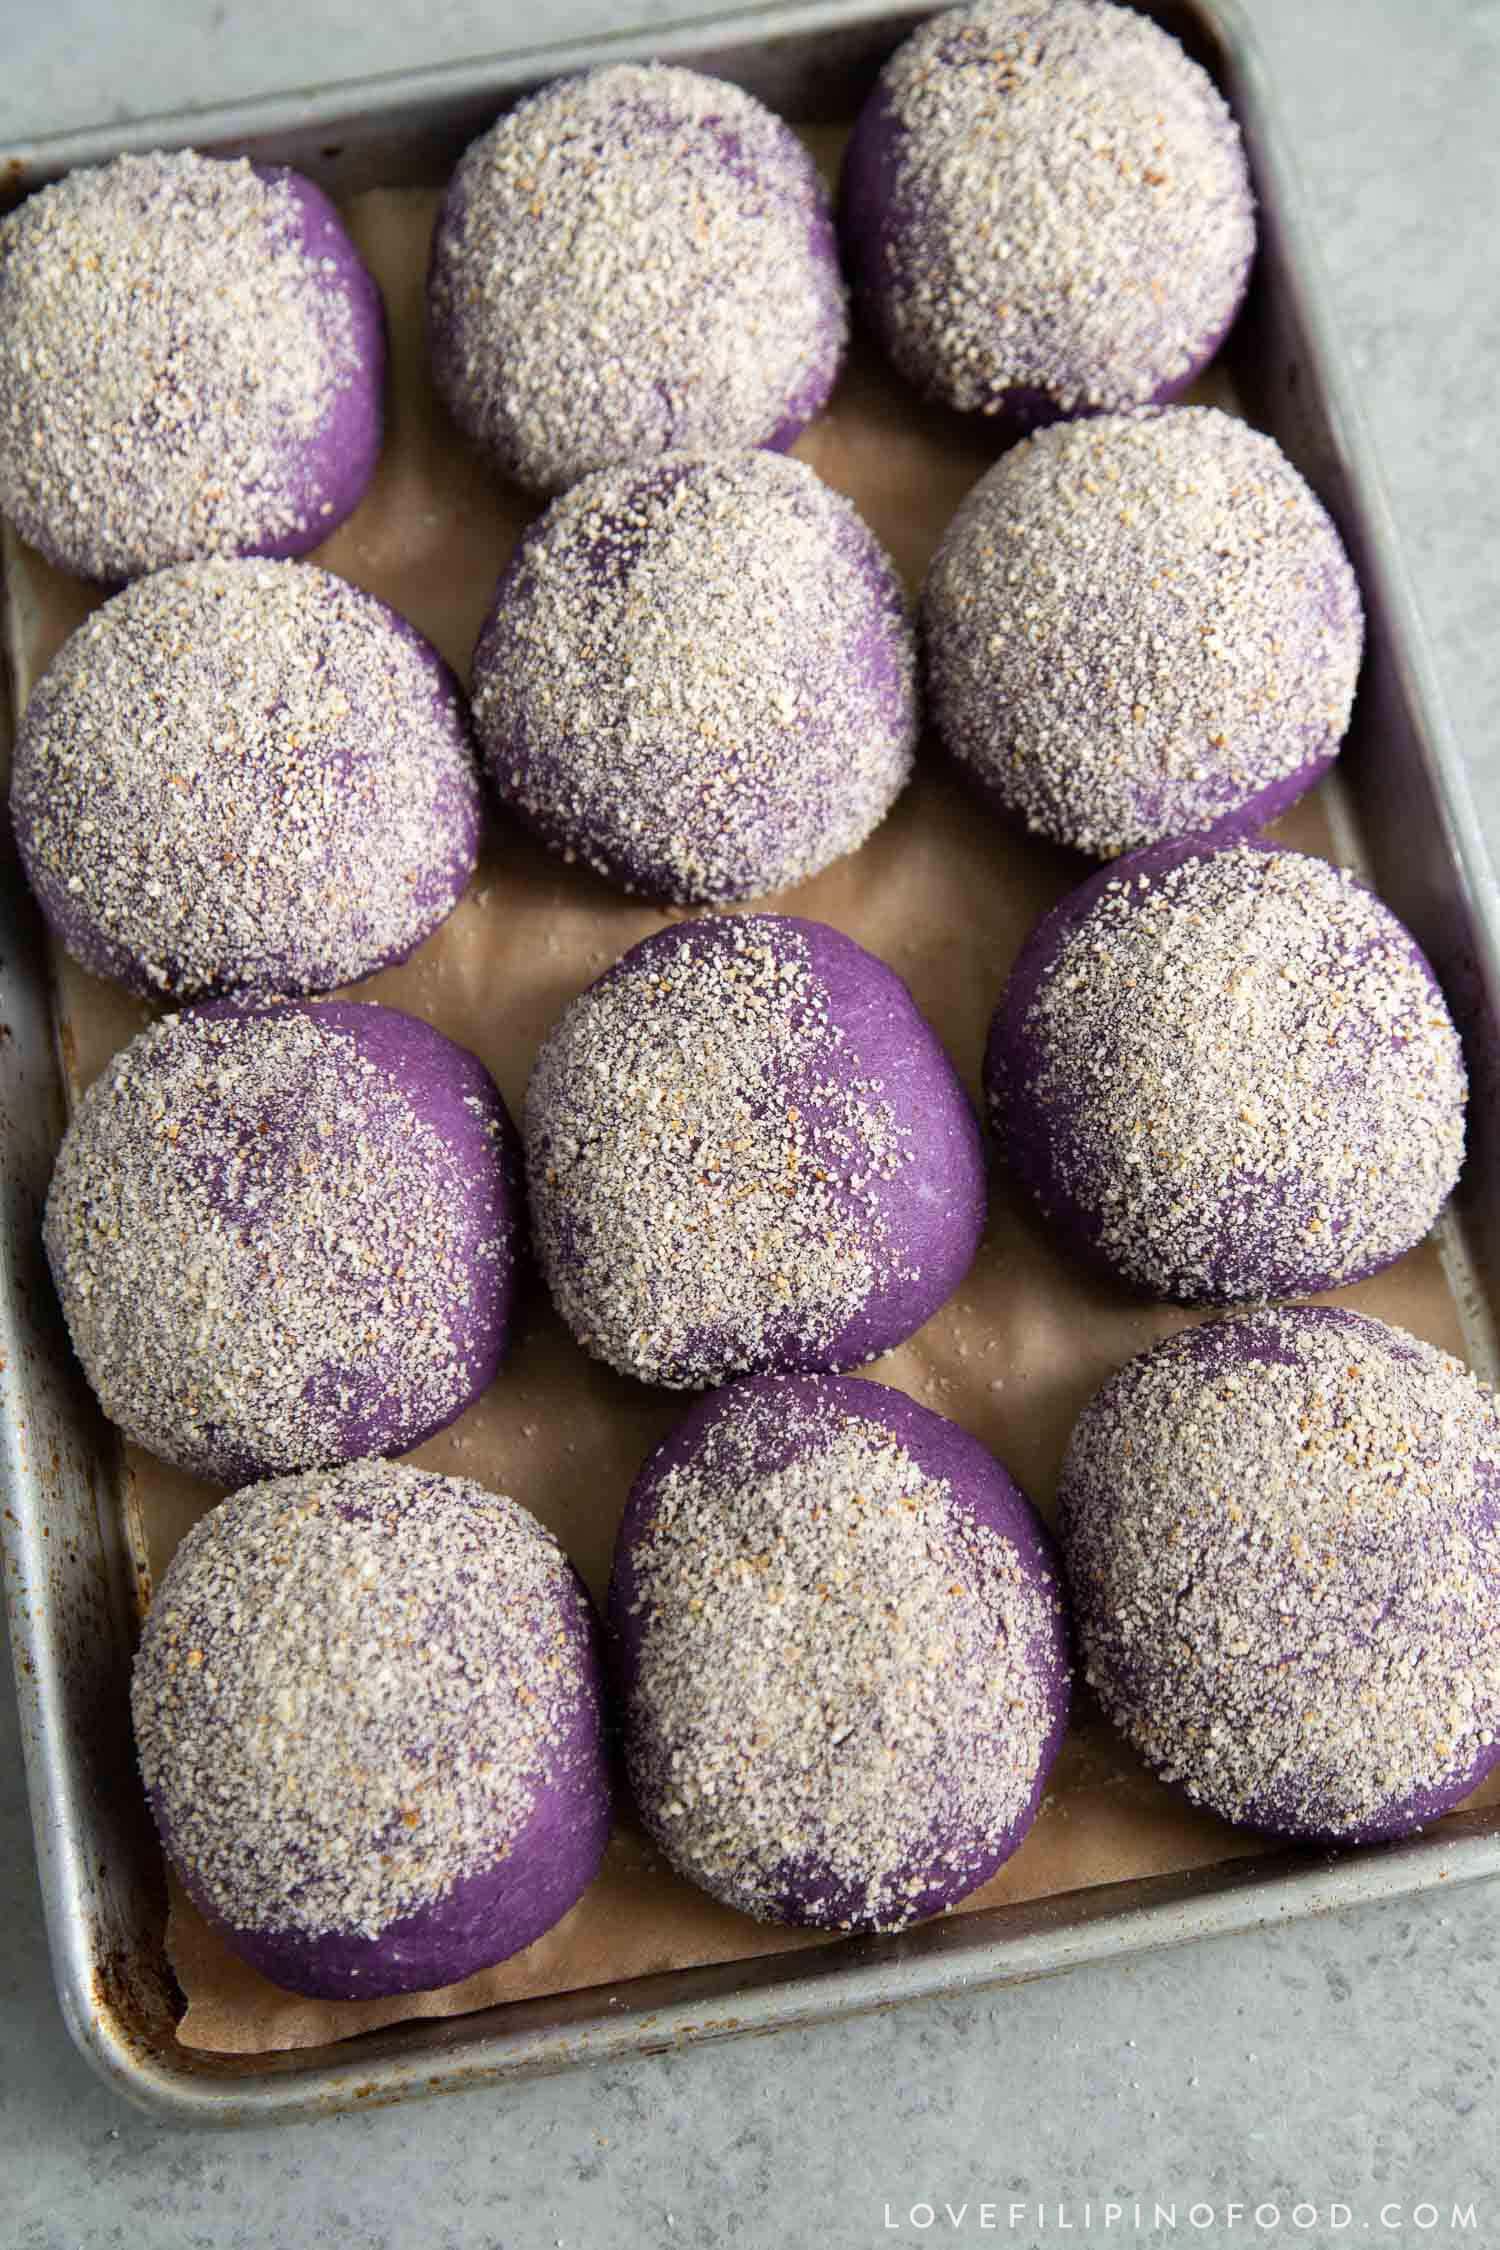 Purple Yam Ube Cheese Pandesal